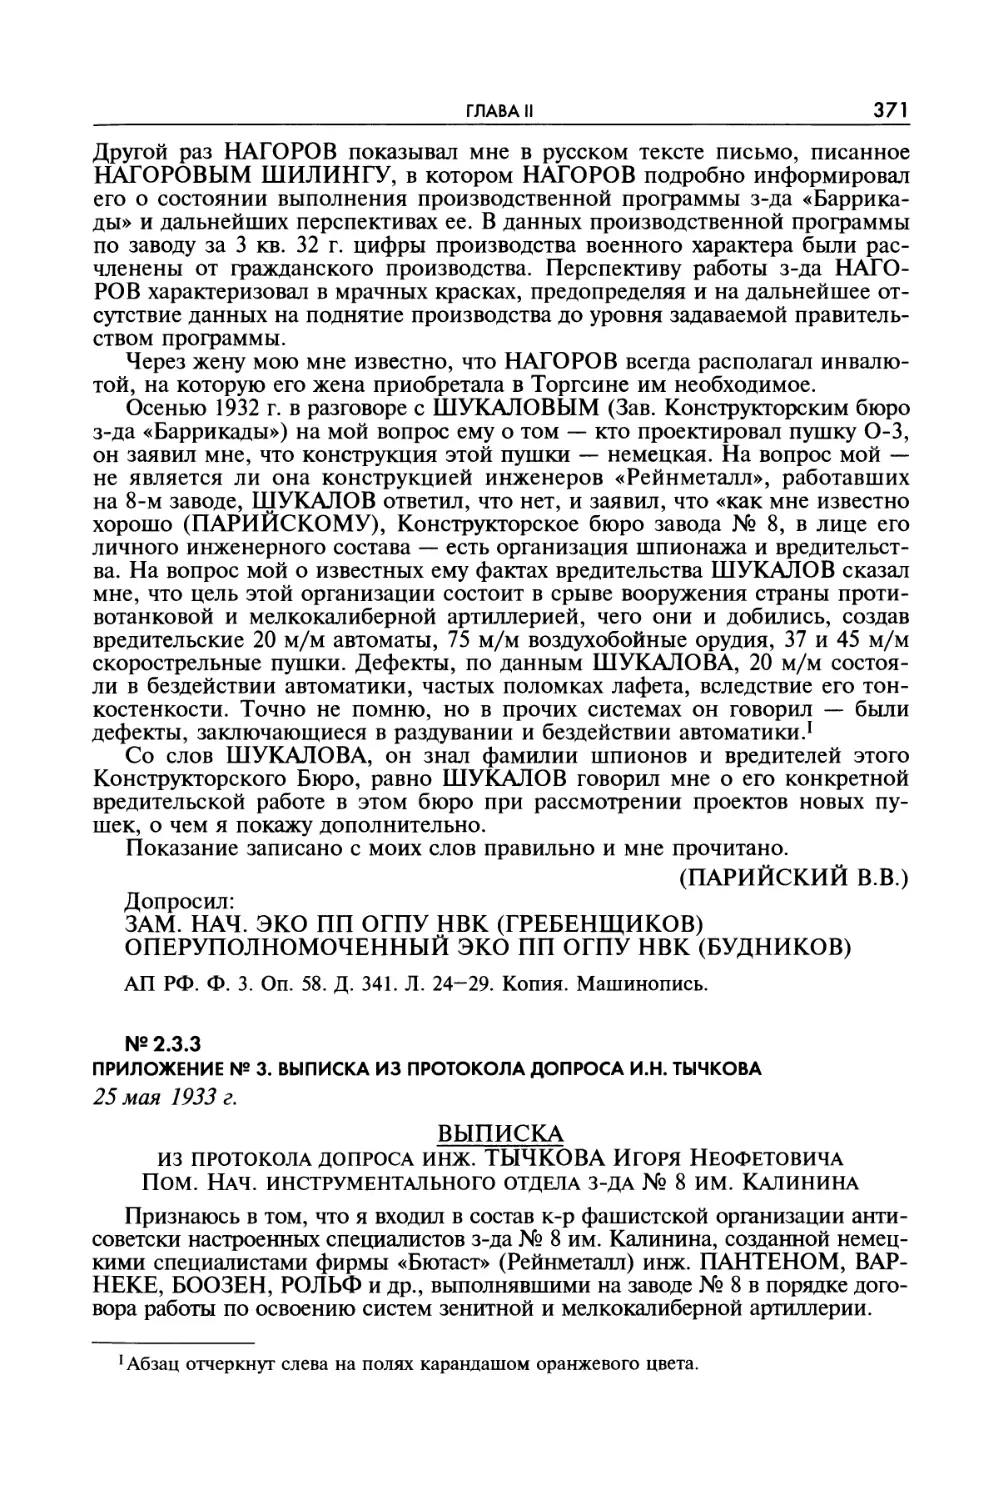 № 2 3 3. приложение № з выписка из протокола допроса и н тычкова 25 мая 1933 г.